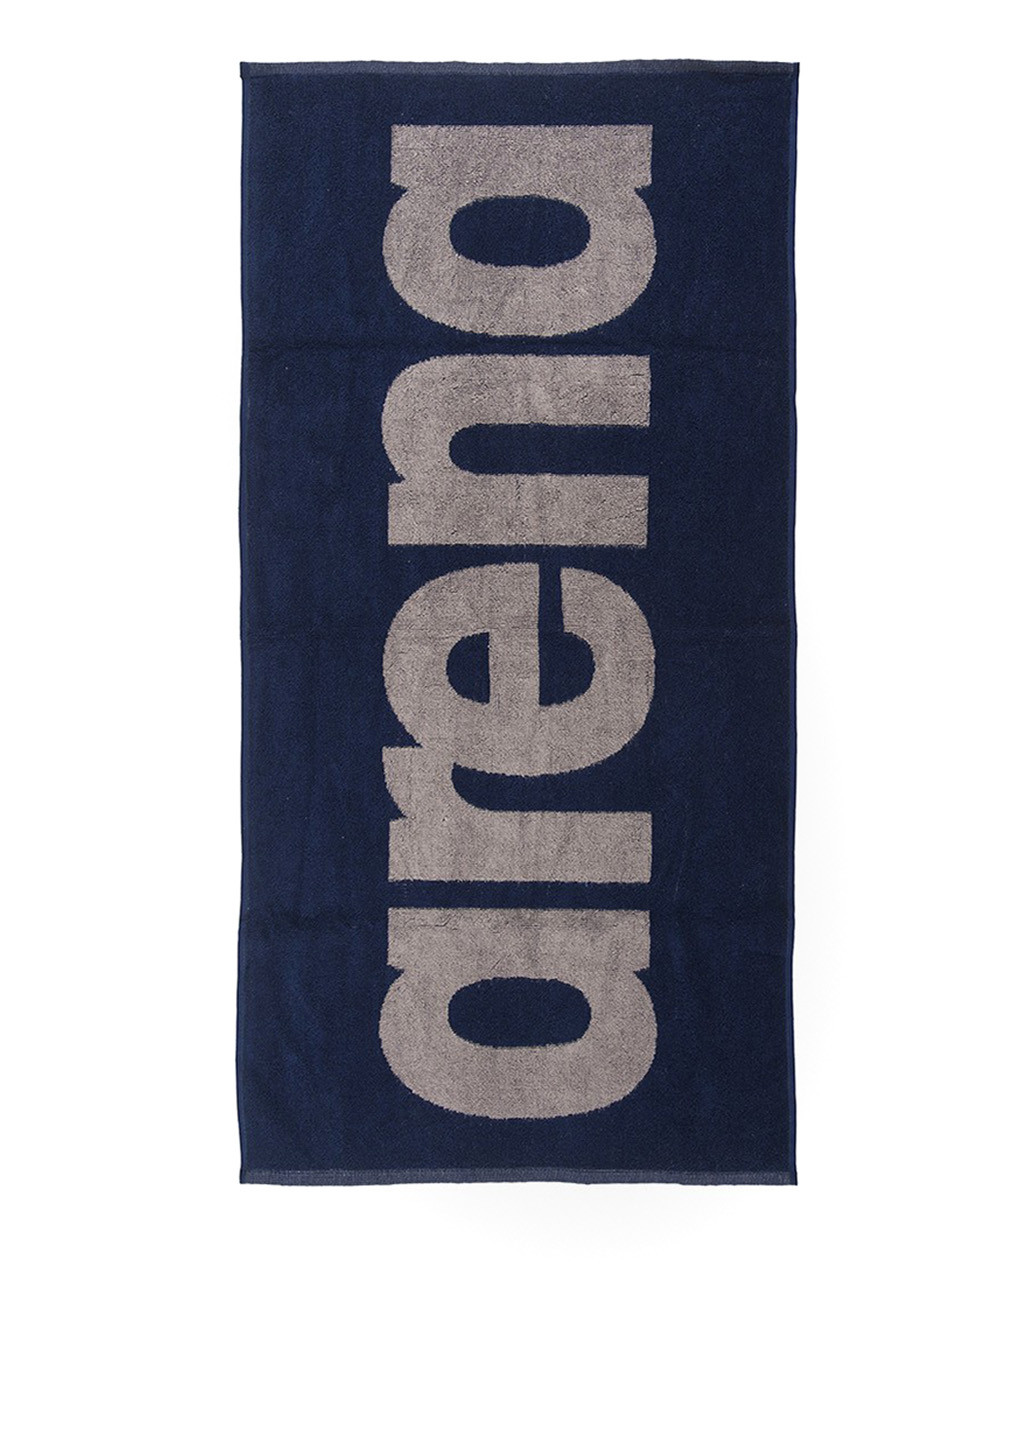 Arena полотенце, 100х50 см логотип темно-синий производство - Турция